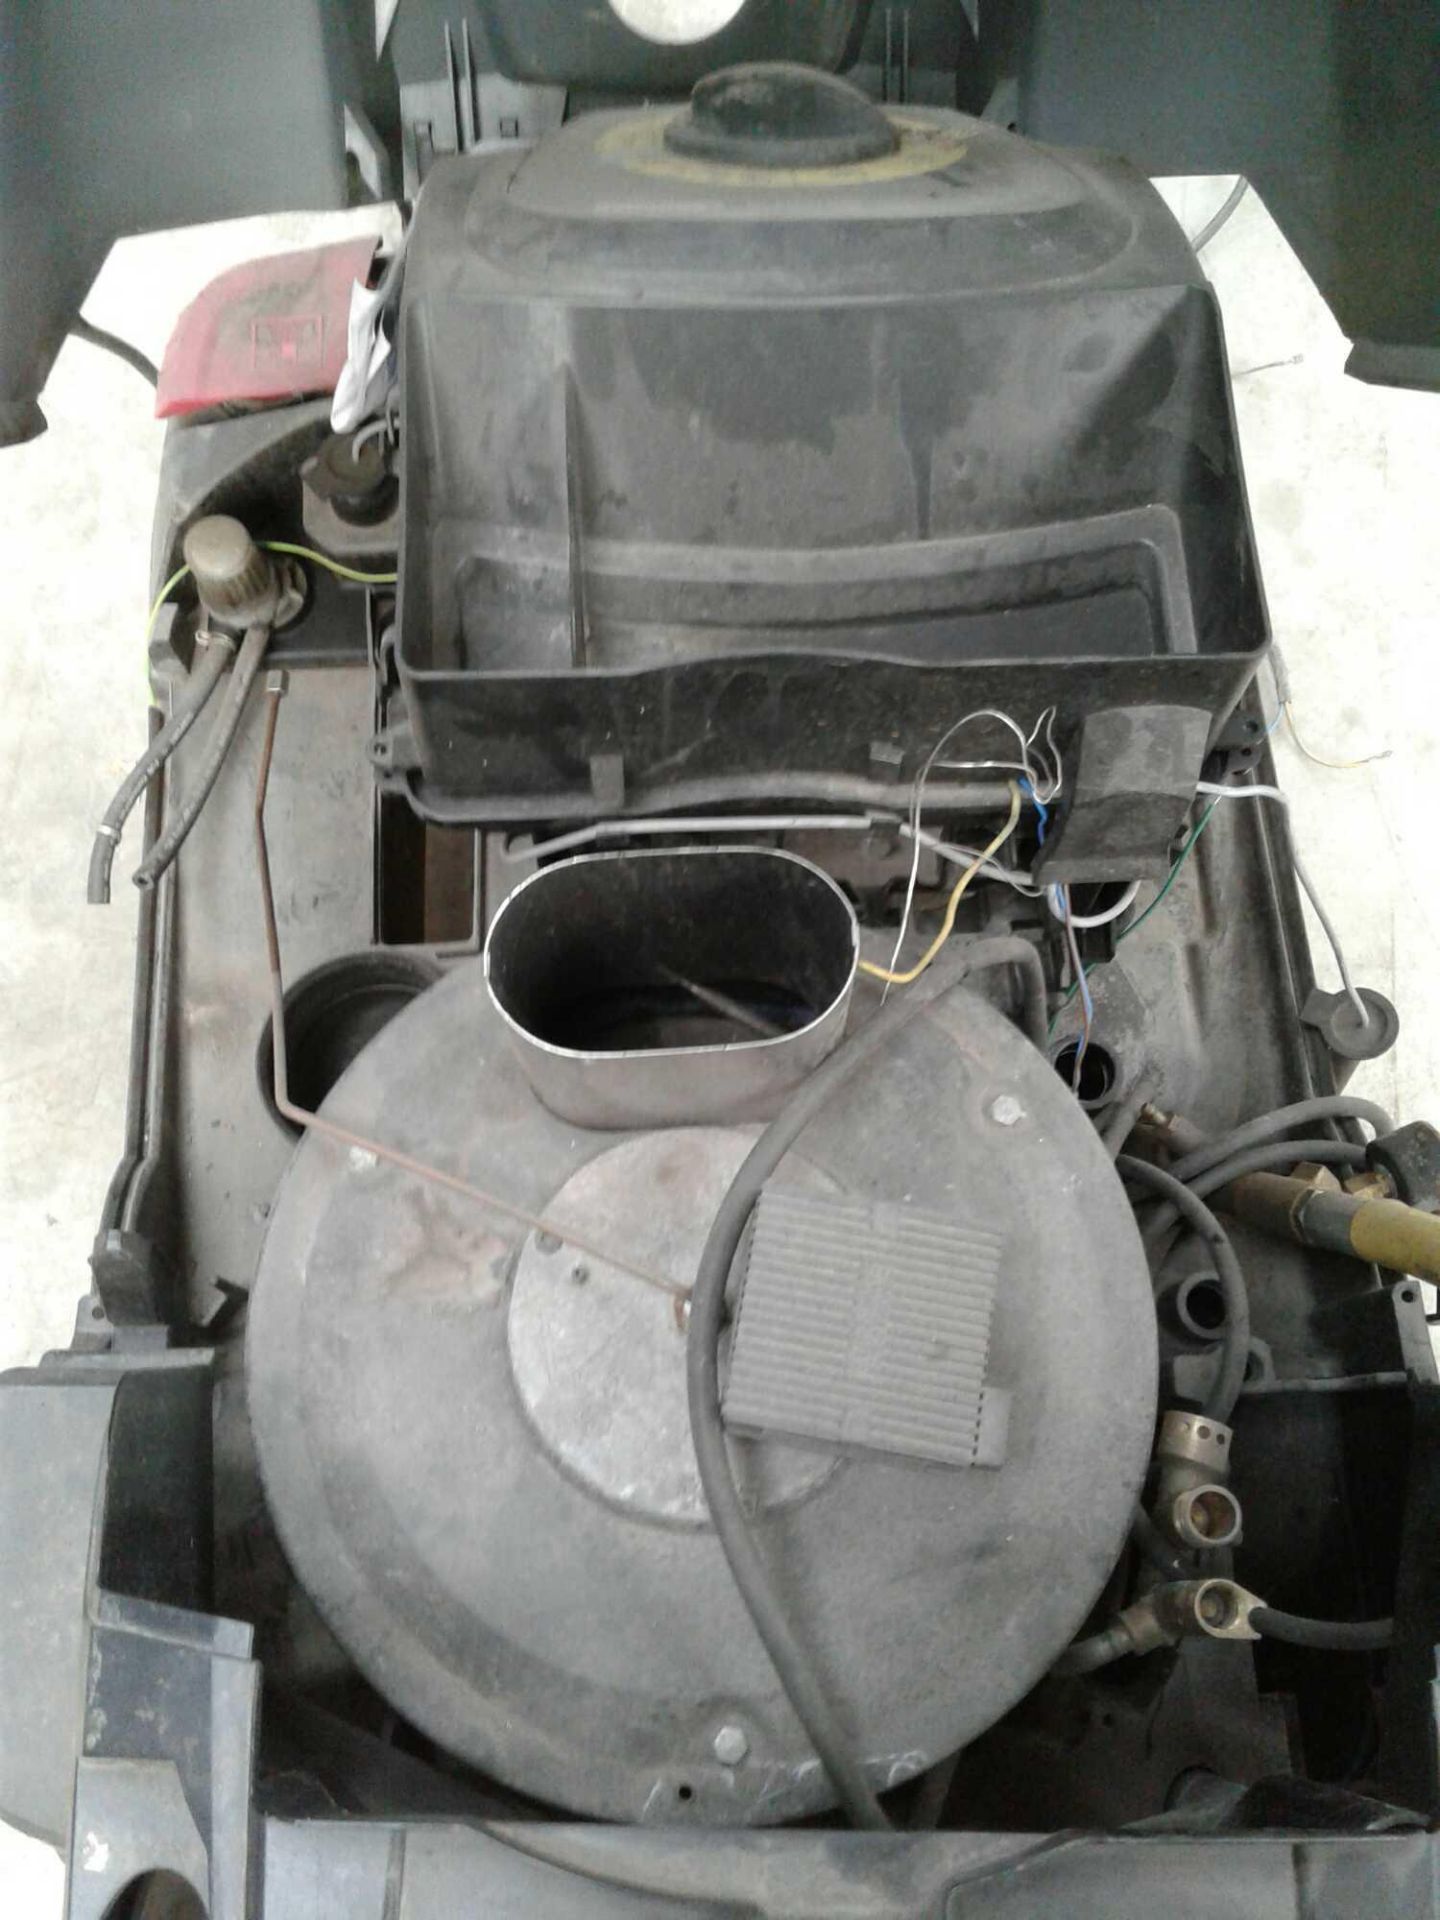 Karcher professional diesel washer 110v - Image 3 of 3